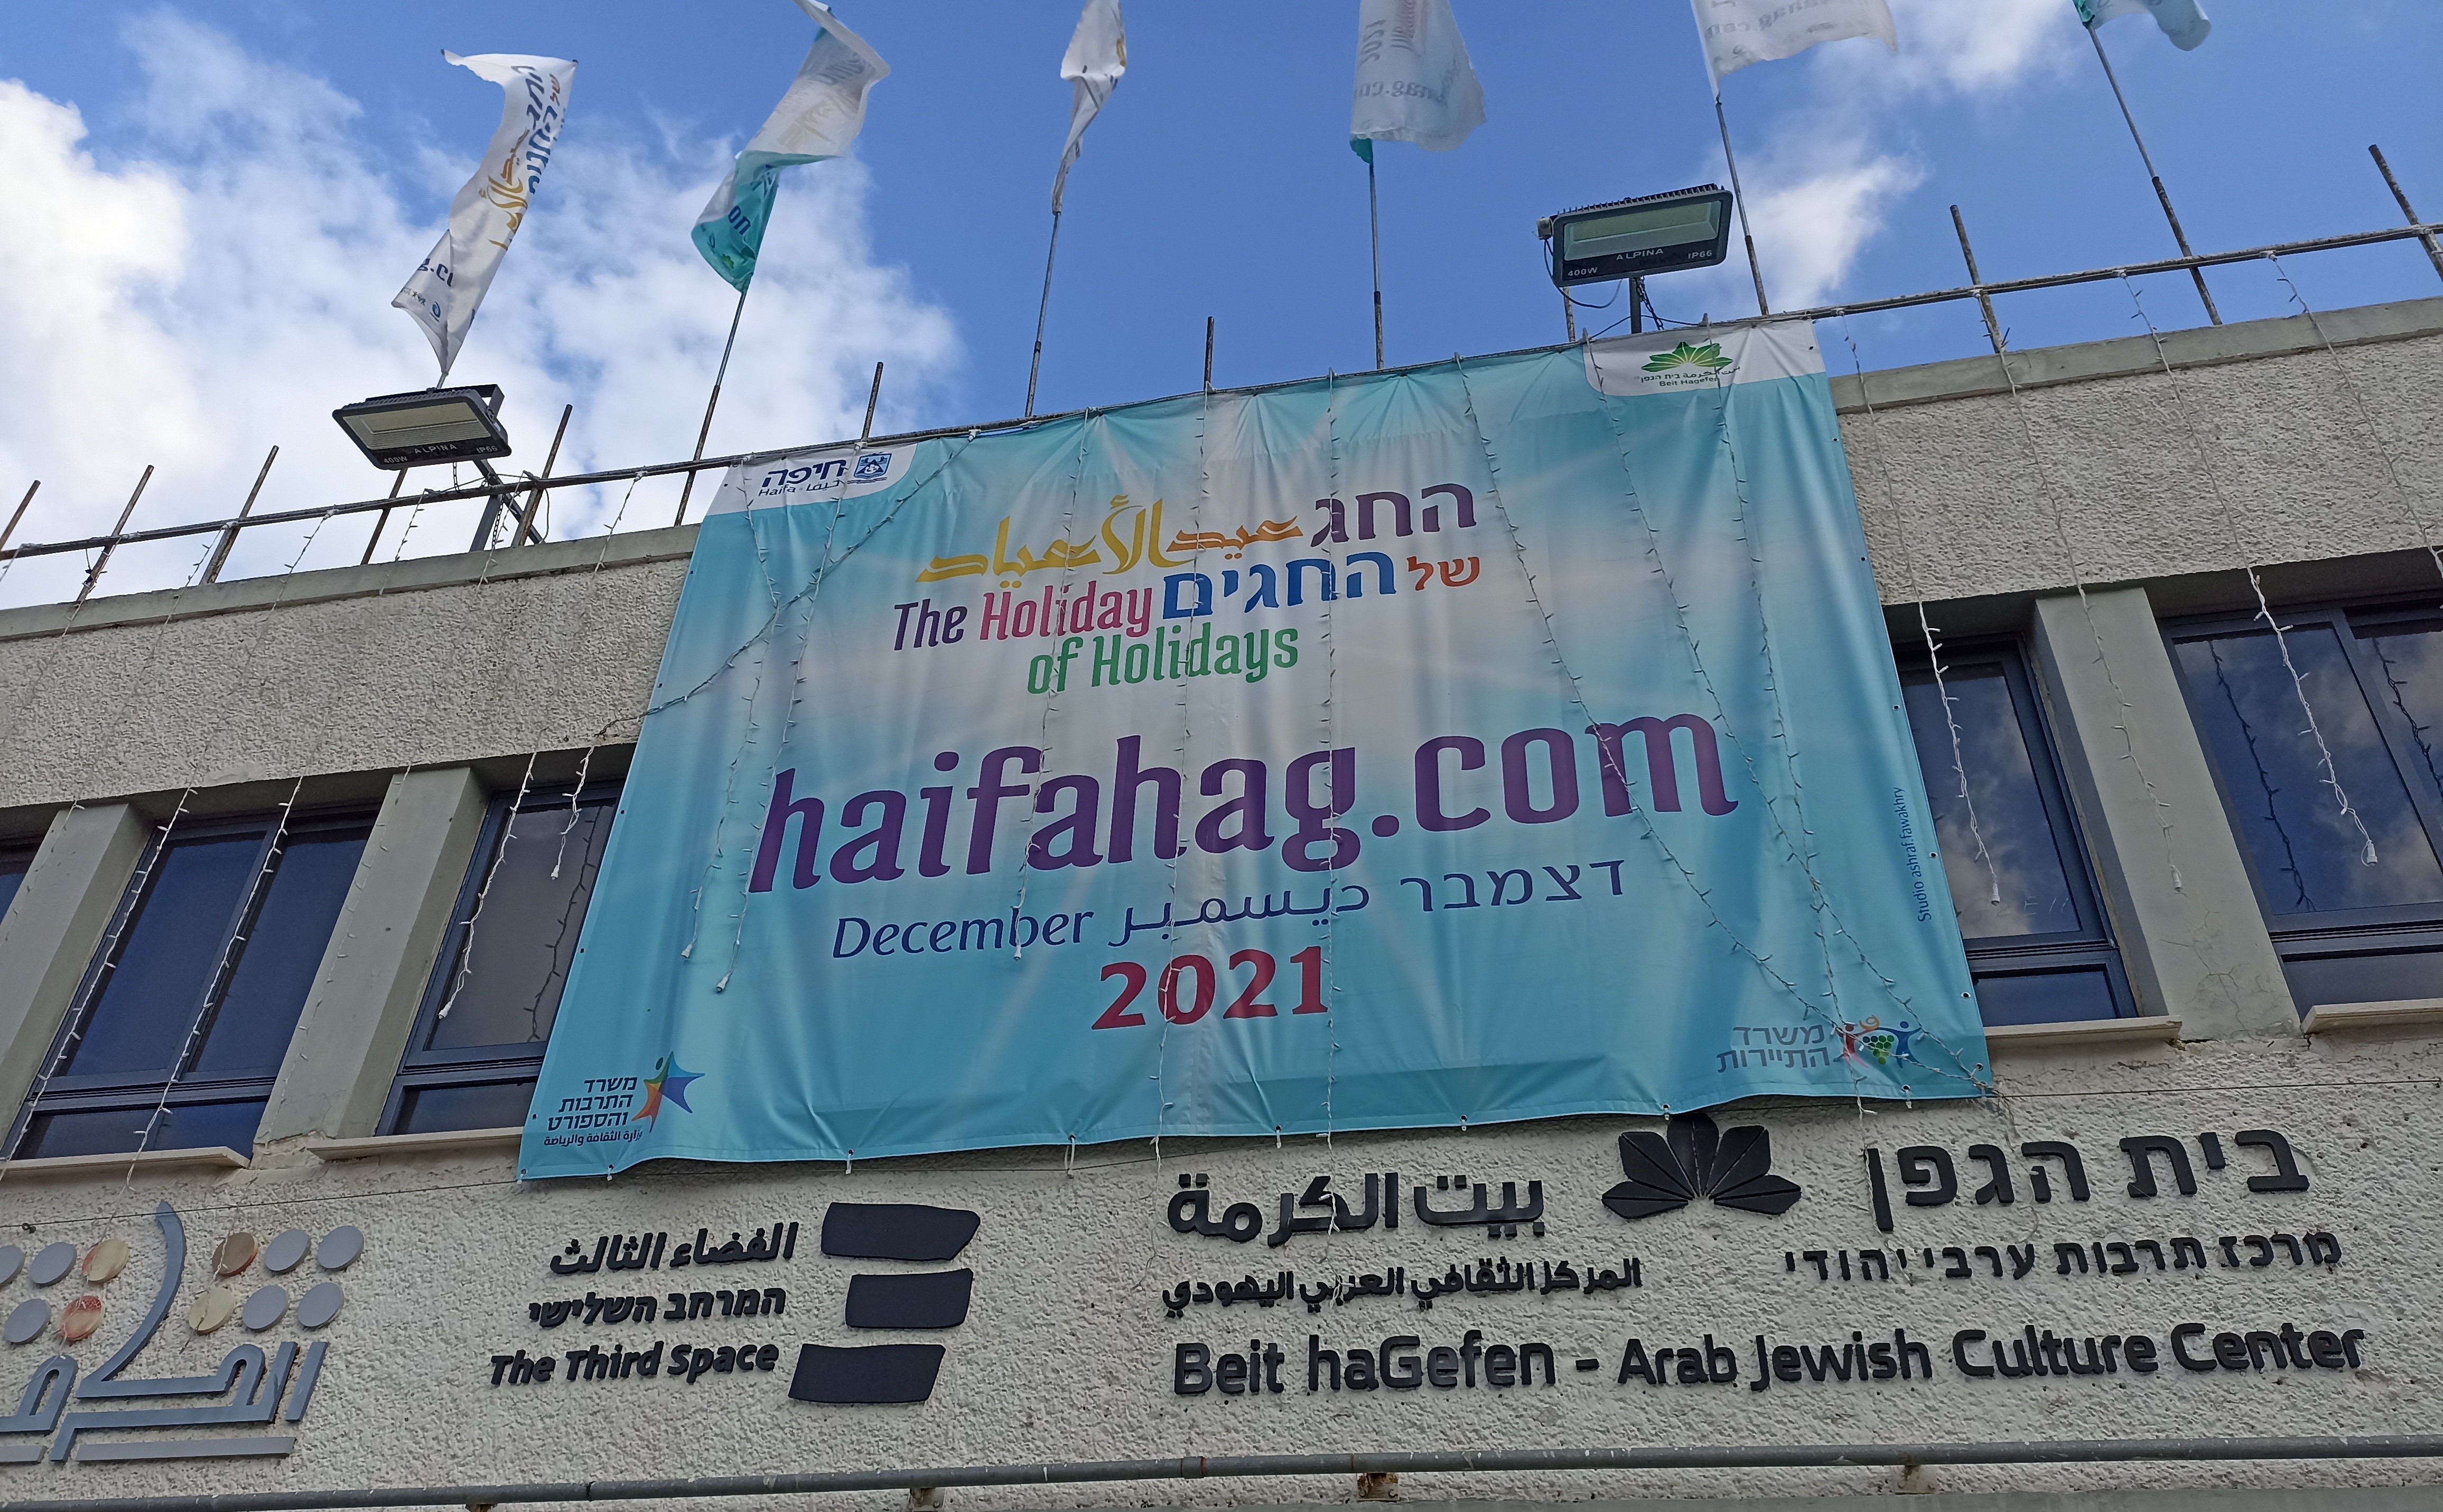 Werbebanner für Haifas Festival Holiday of Holidays an der Fassade von Beit Hagefen – Israels einzigem Kulturzentrum, das sich speziell dem jüdisch-arabischen Dialog widmet (Foto: Noam Yatsiv)